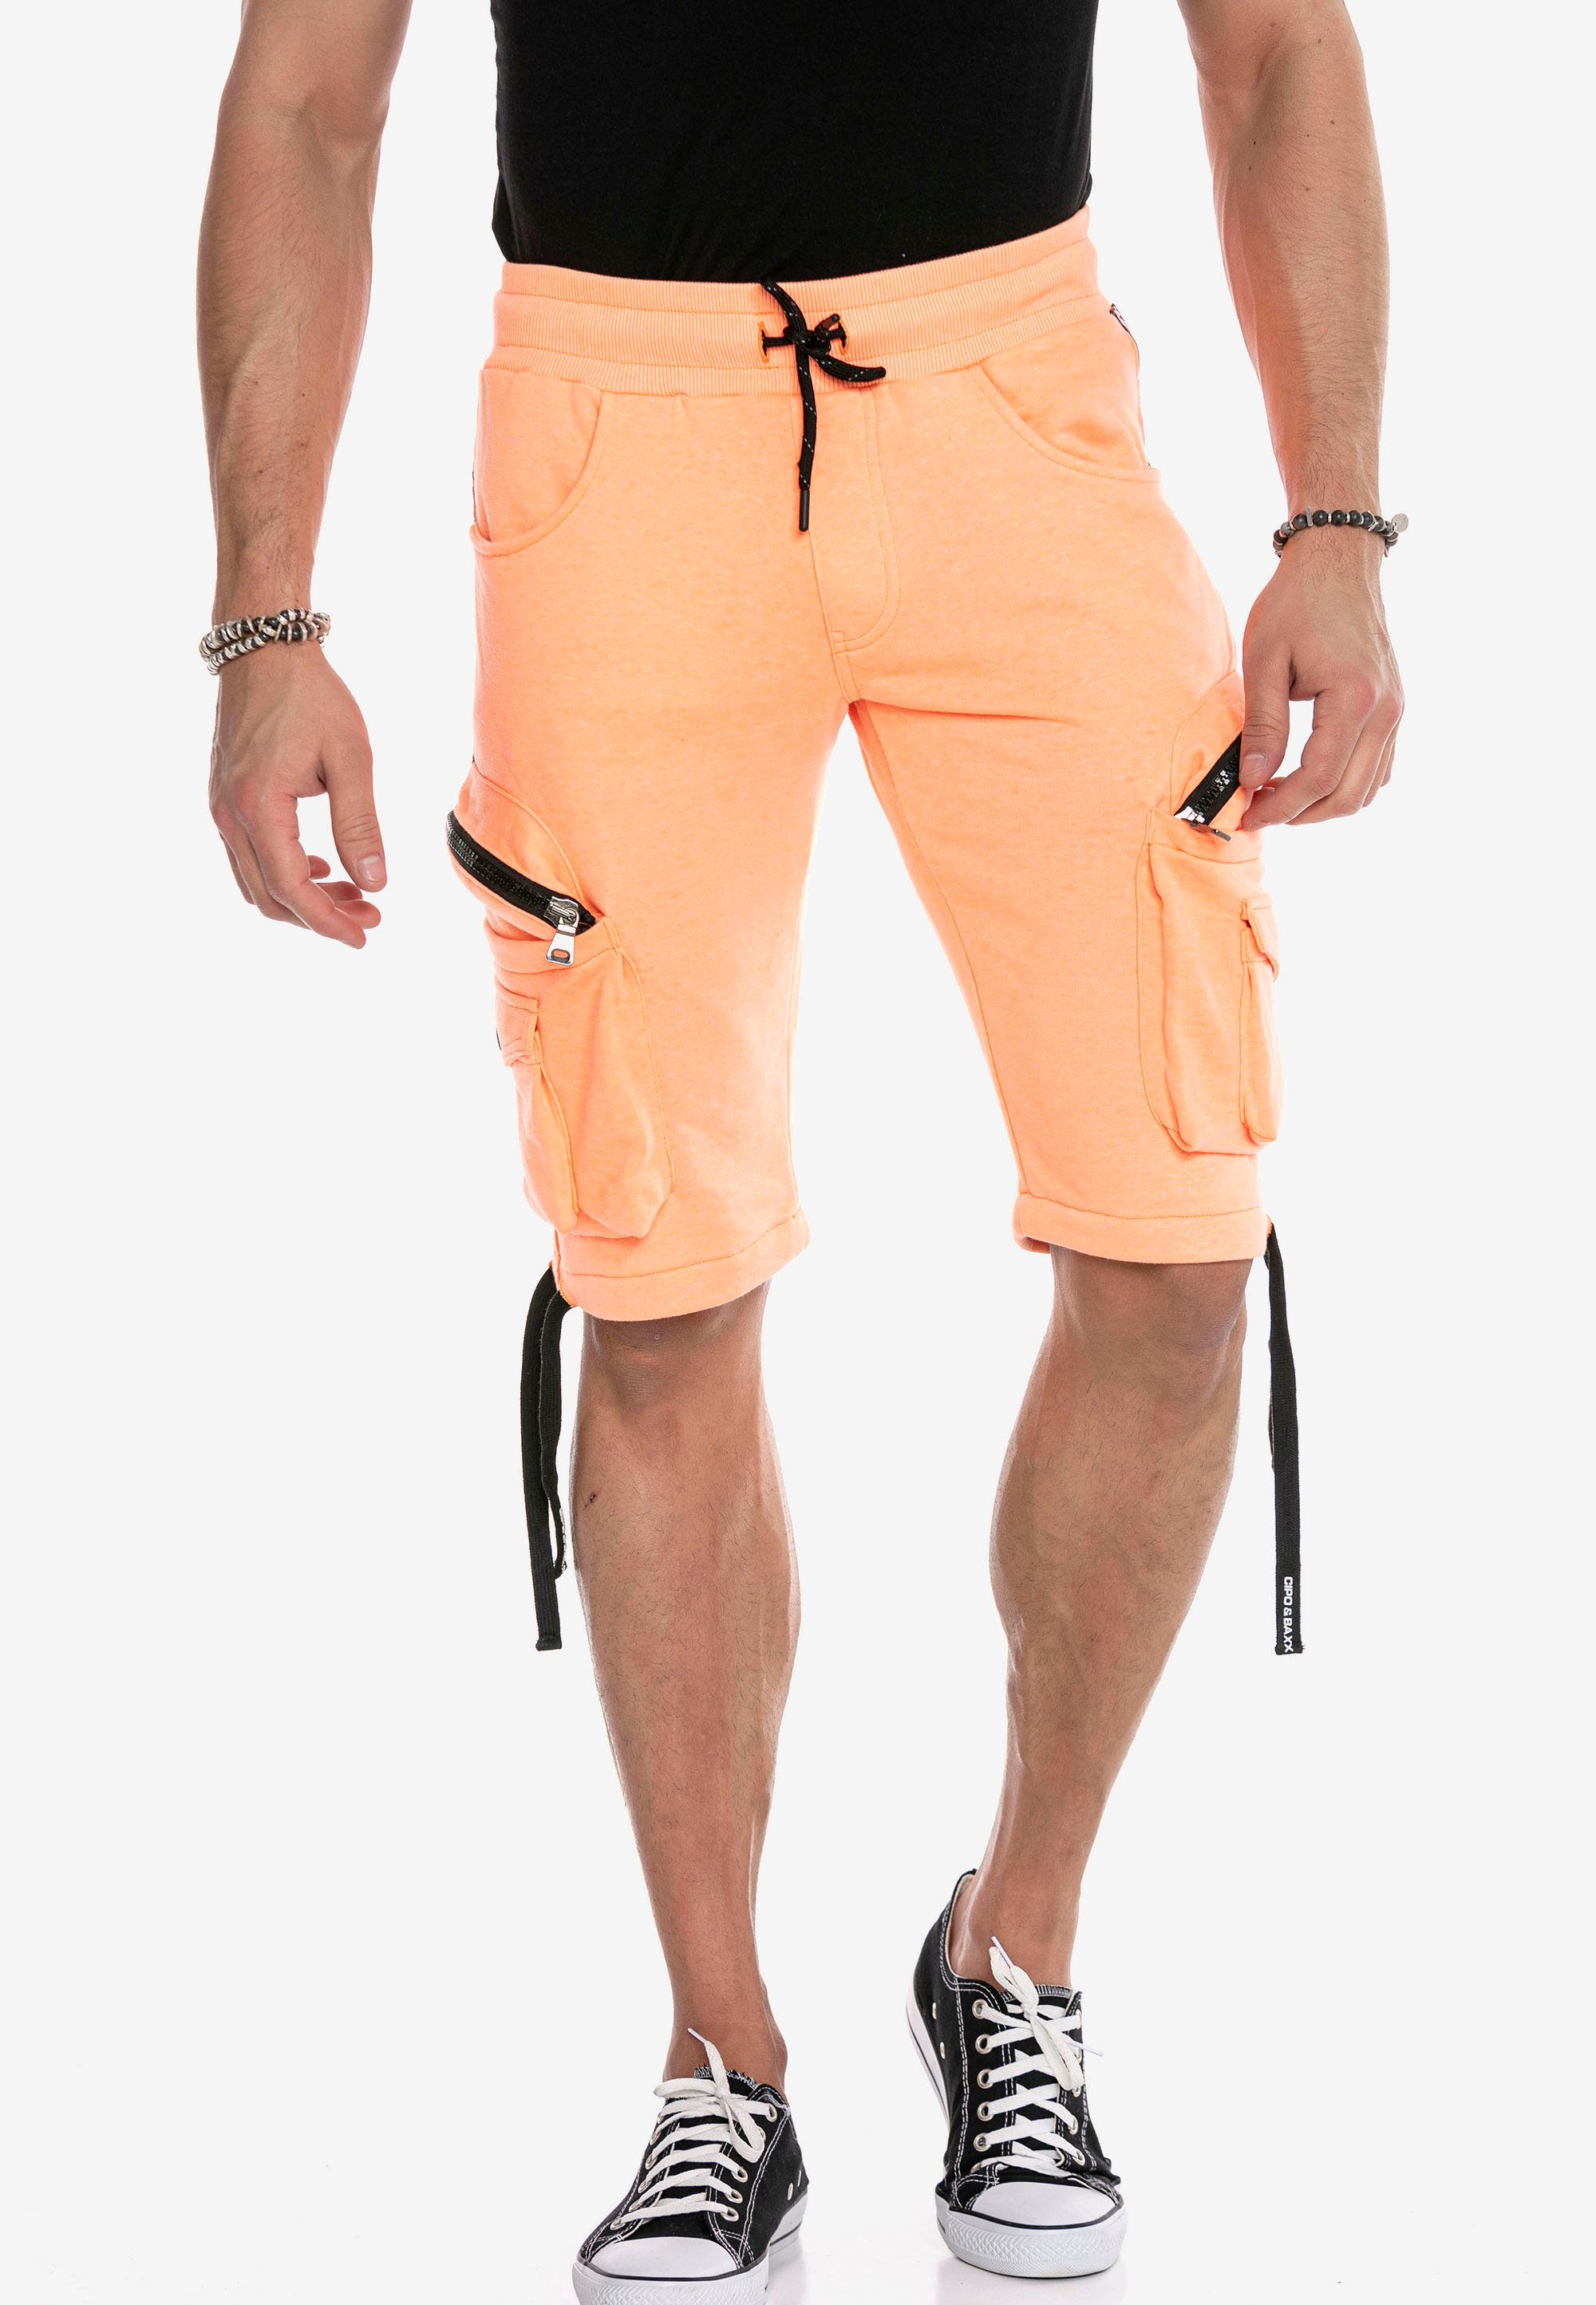 Baxx in Look orange CK225 Cipo Shorts & sportlichem